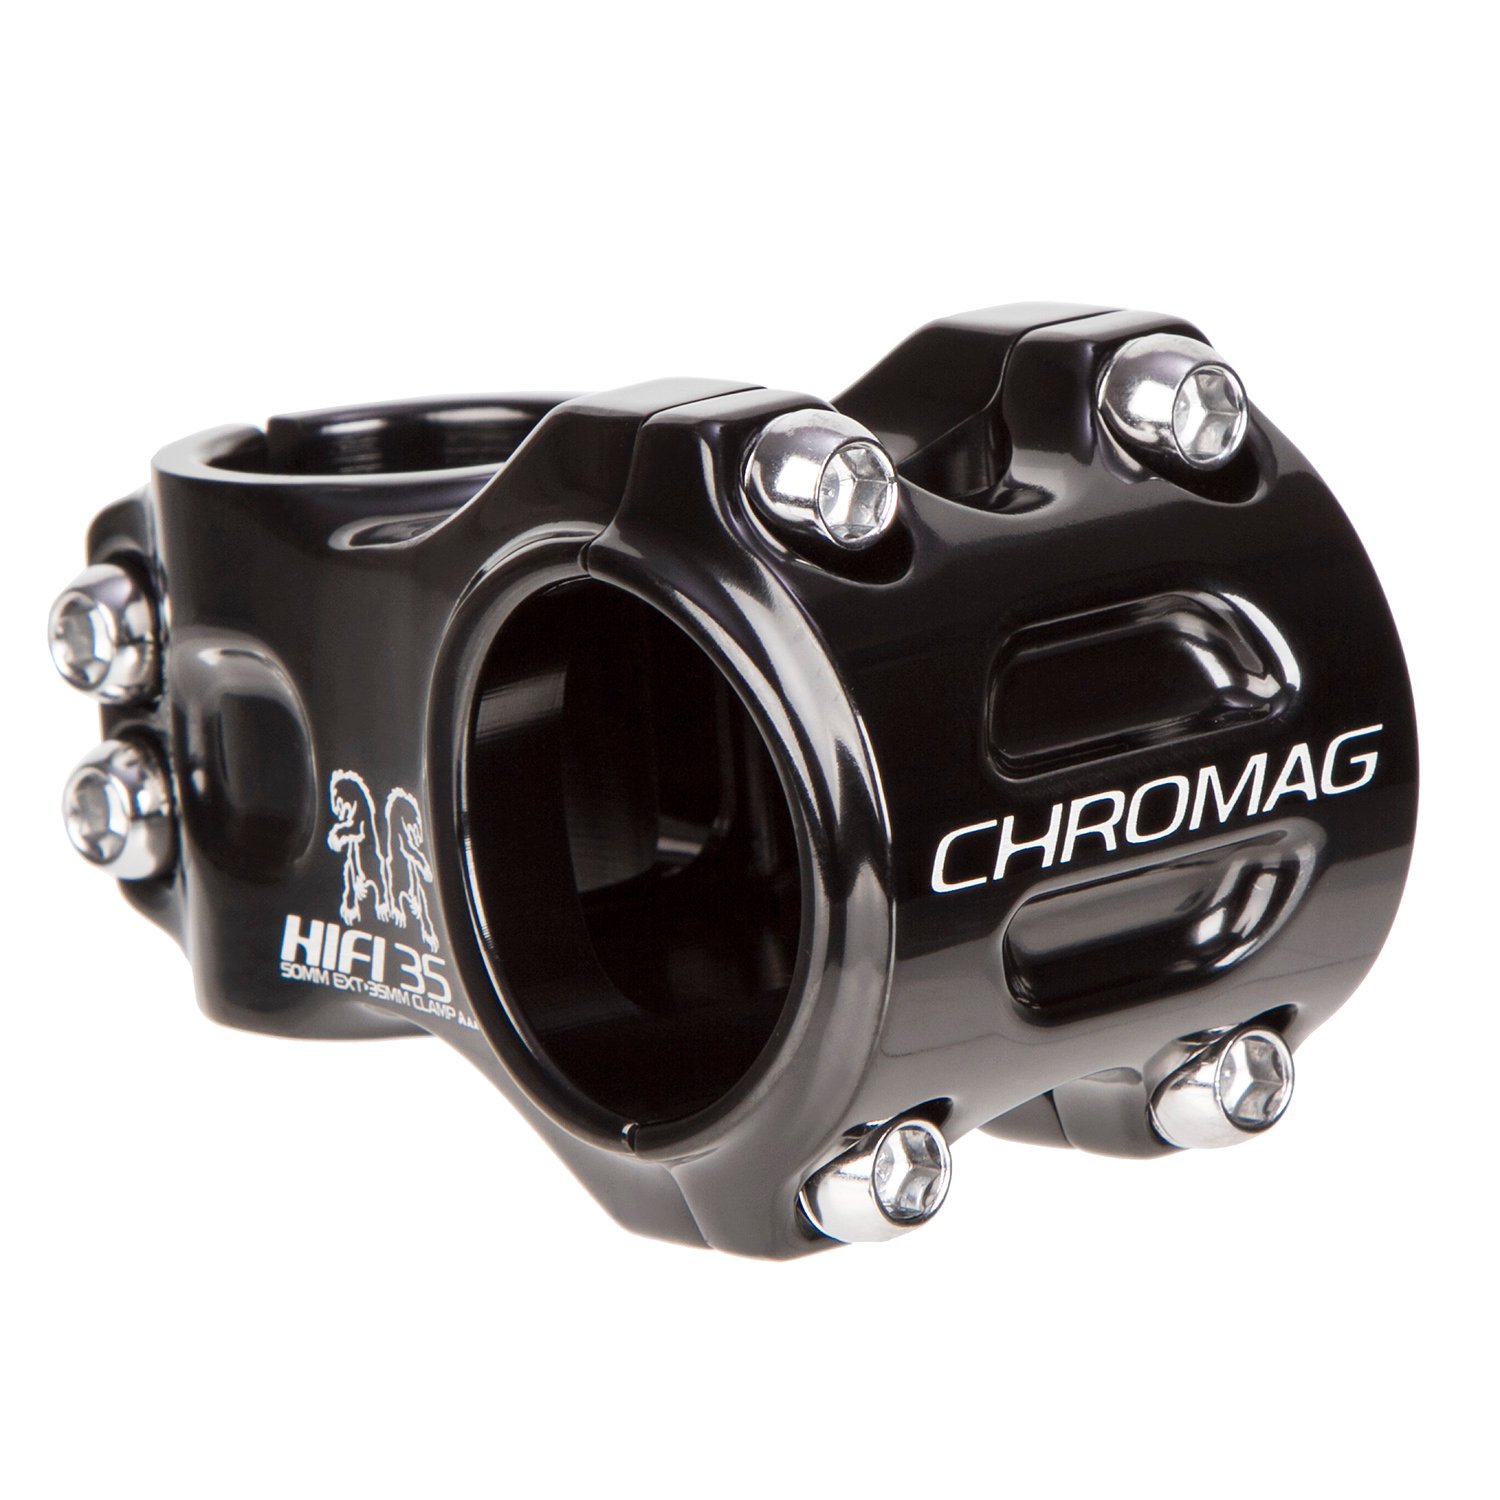 Chromag MTB Stem HIFI 35.0 mm, 50 mm Reach, Black